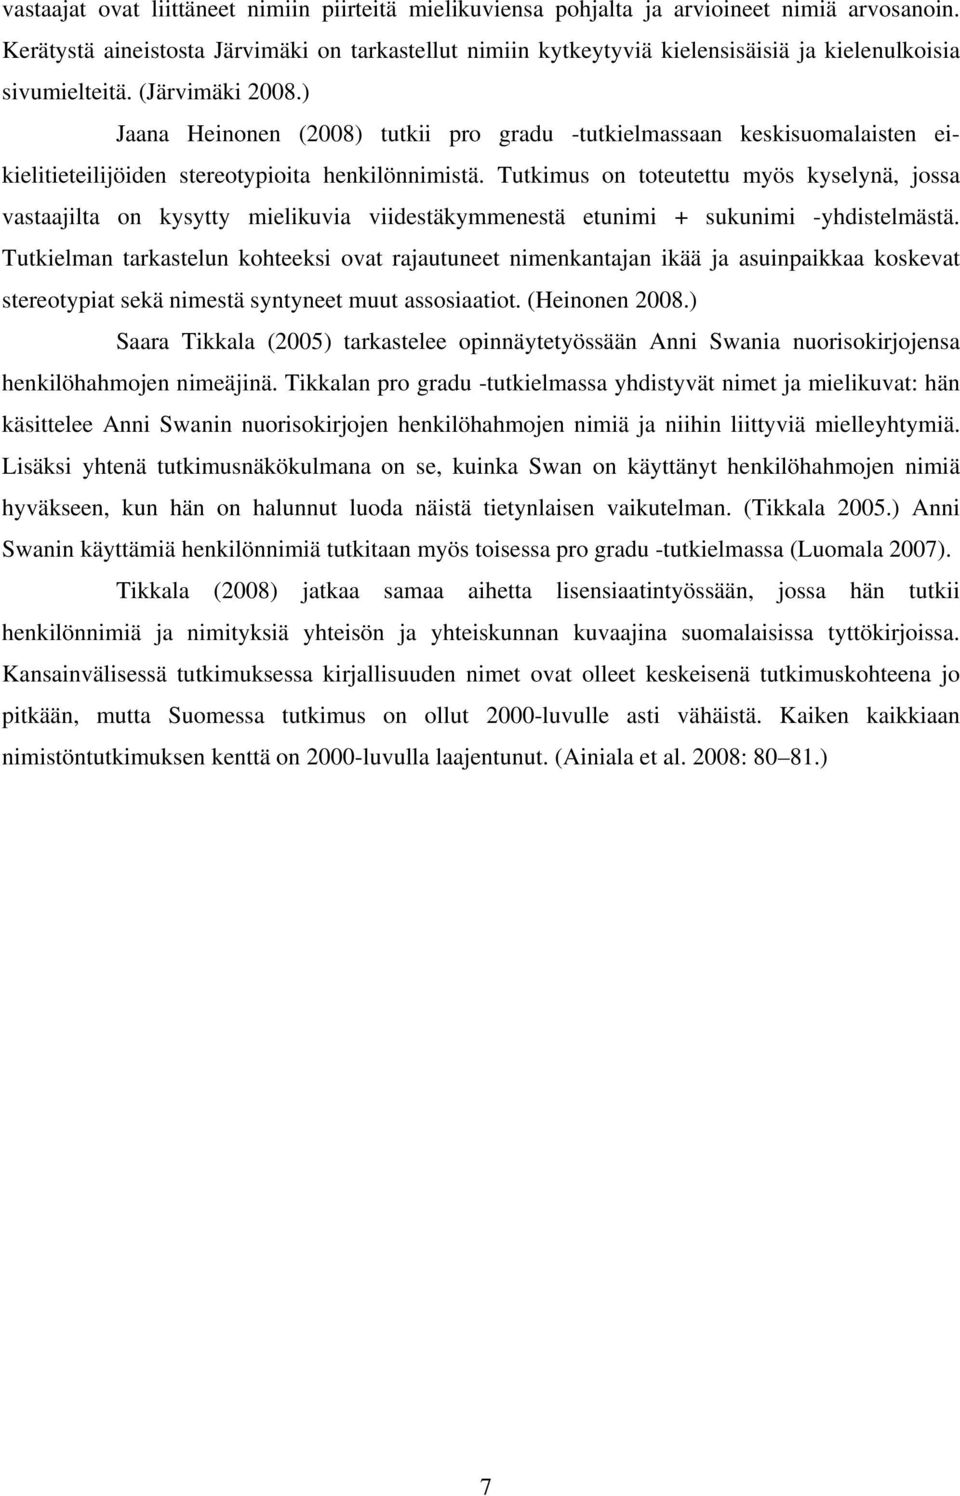 ) Jaana Heinonen (2008) tutkii pro gradu -tutkielmassaan keskisuomalaisten eikielitieteilijöiden stereotypioita henkilönnimistä.